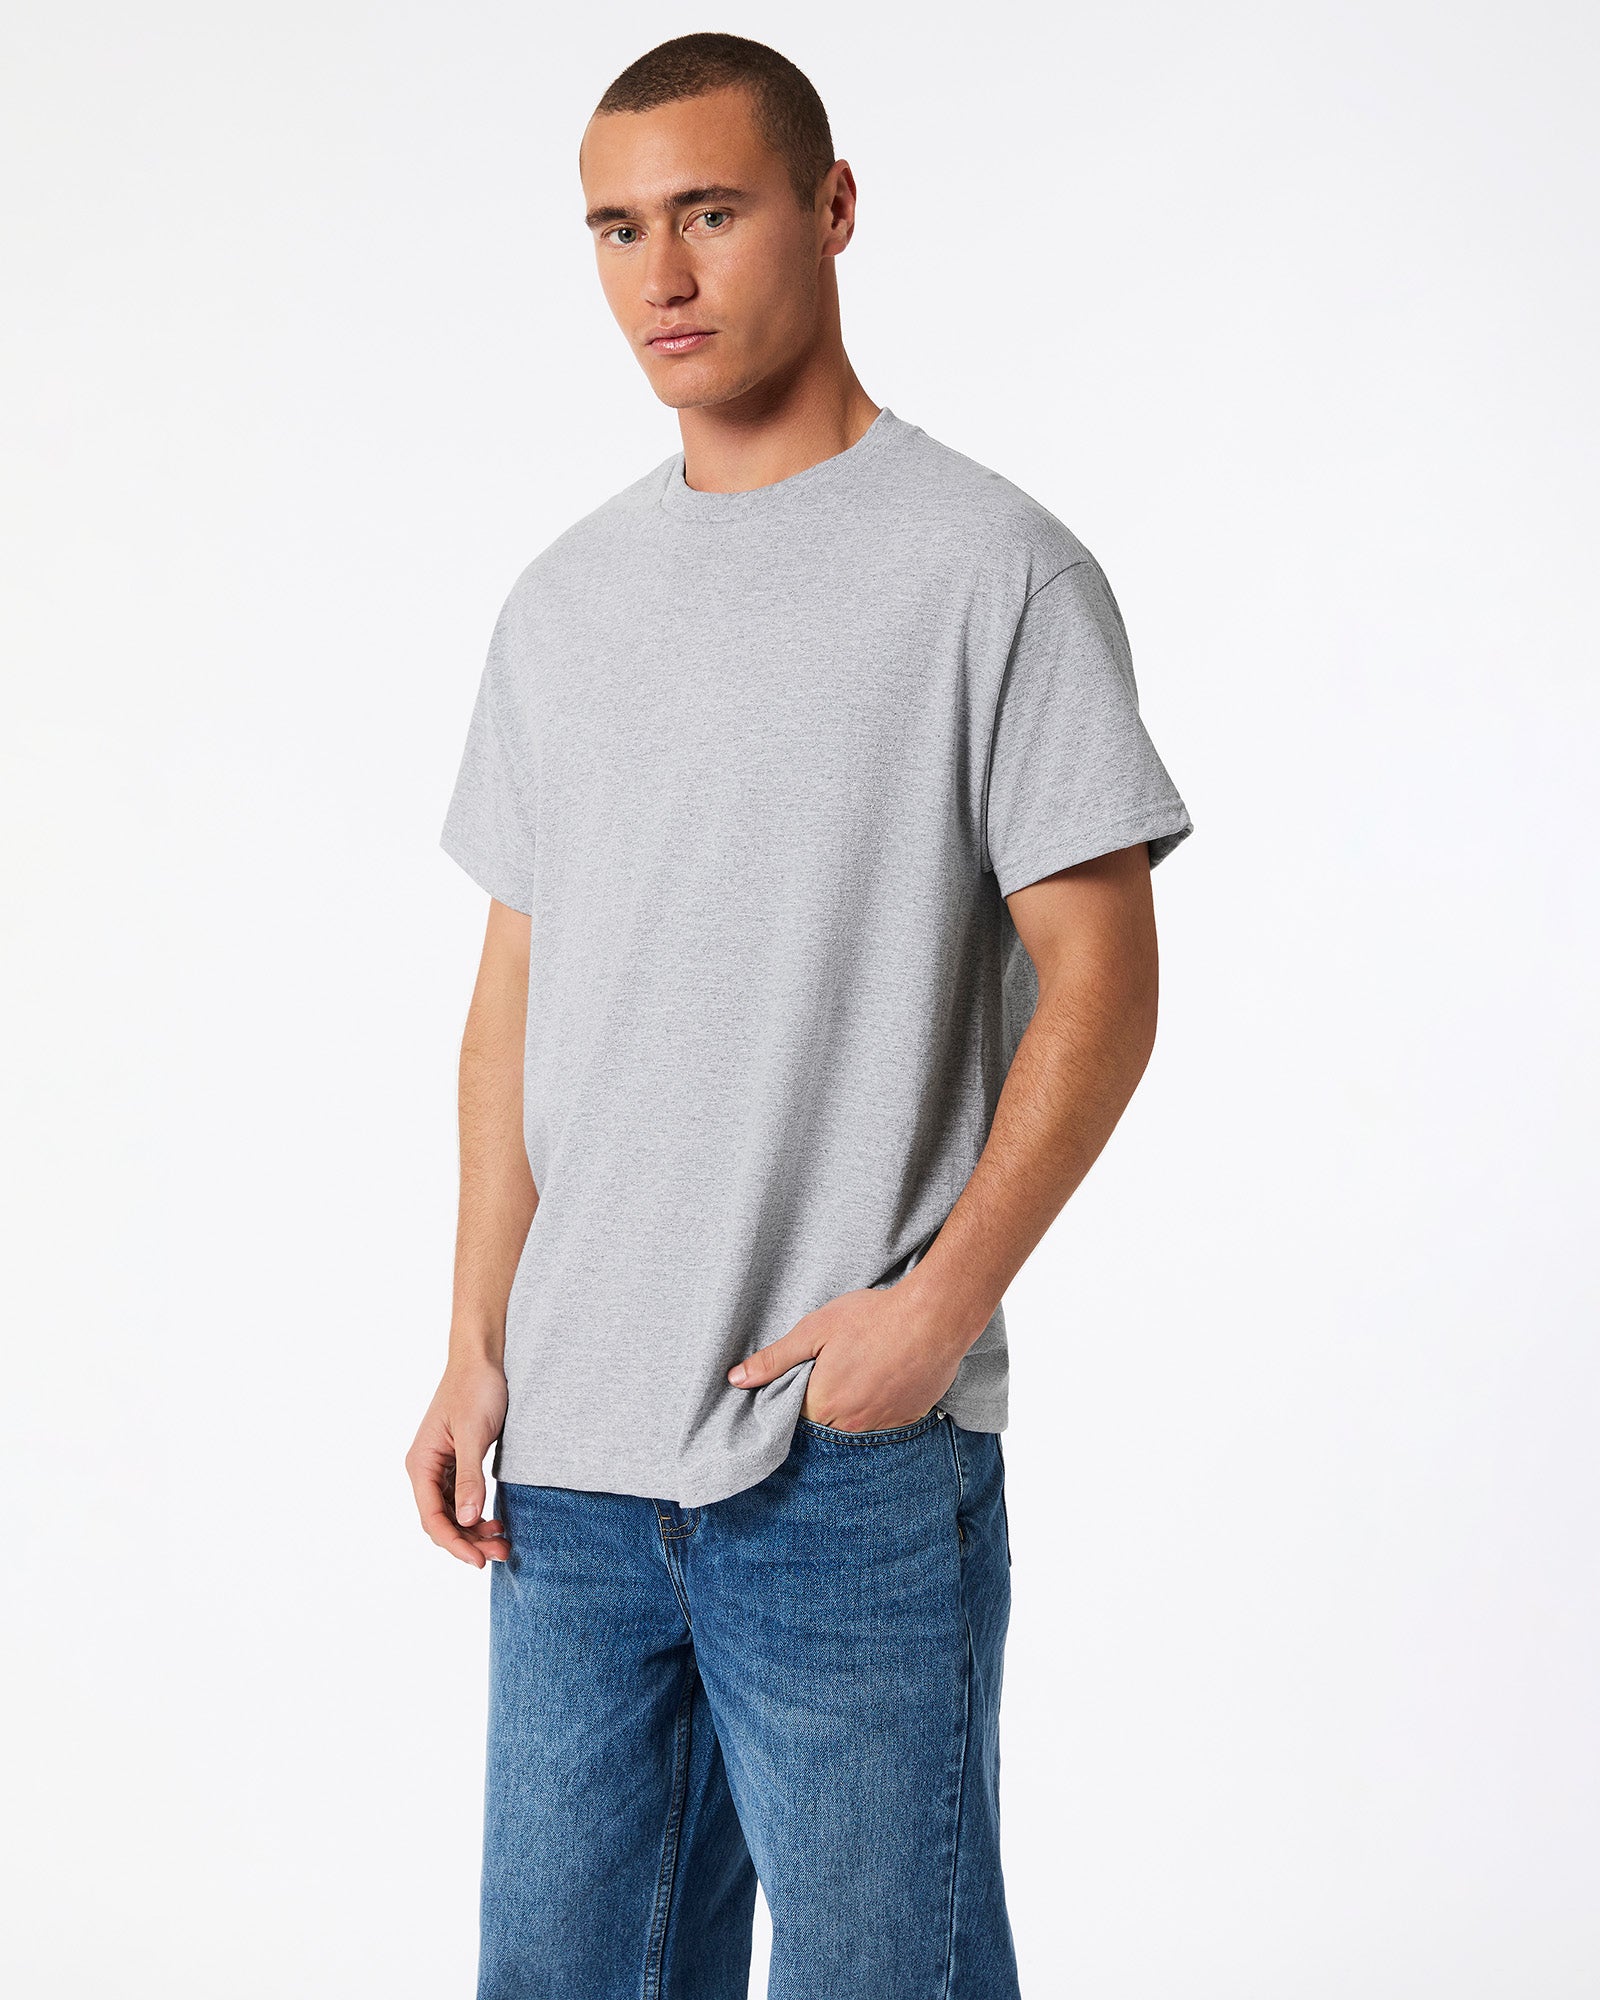 Heavyweight Unisex T-Shirt - Ash